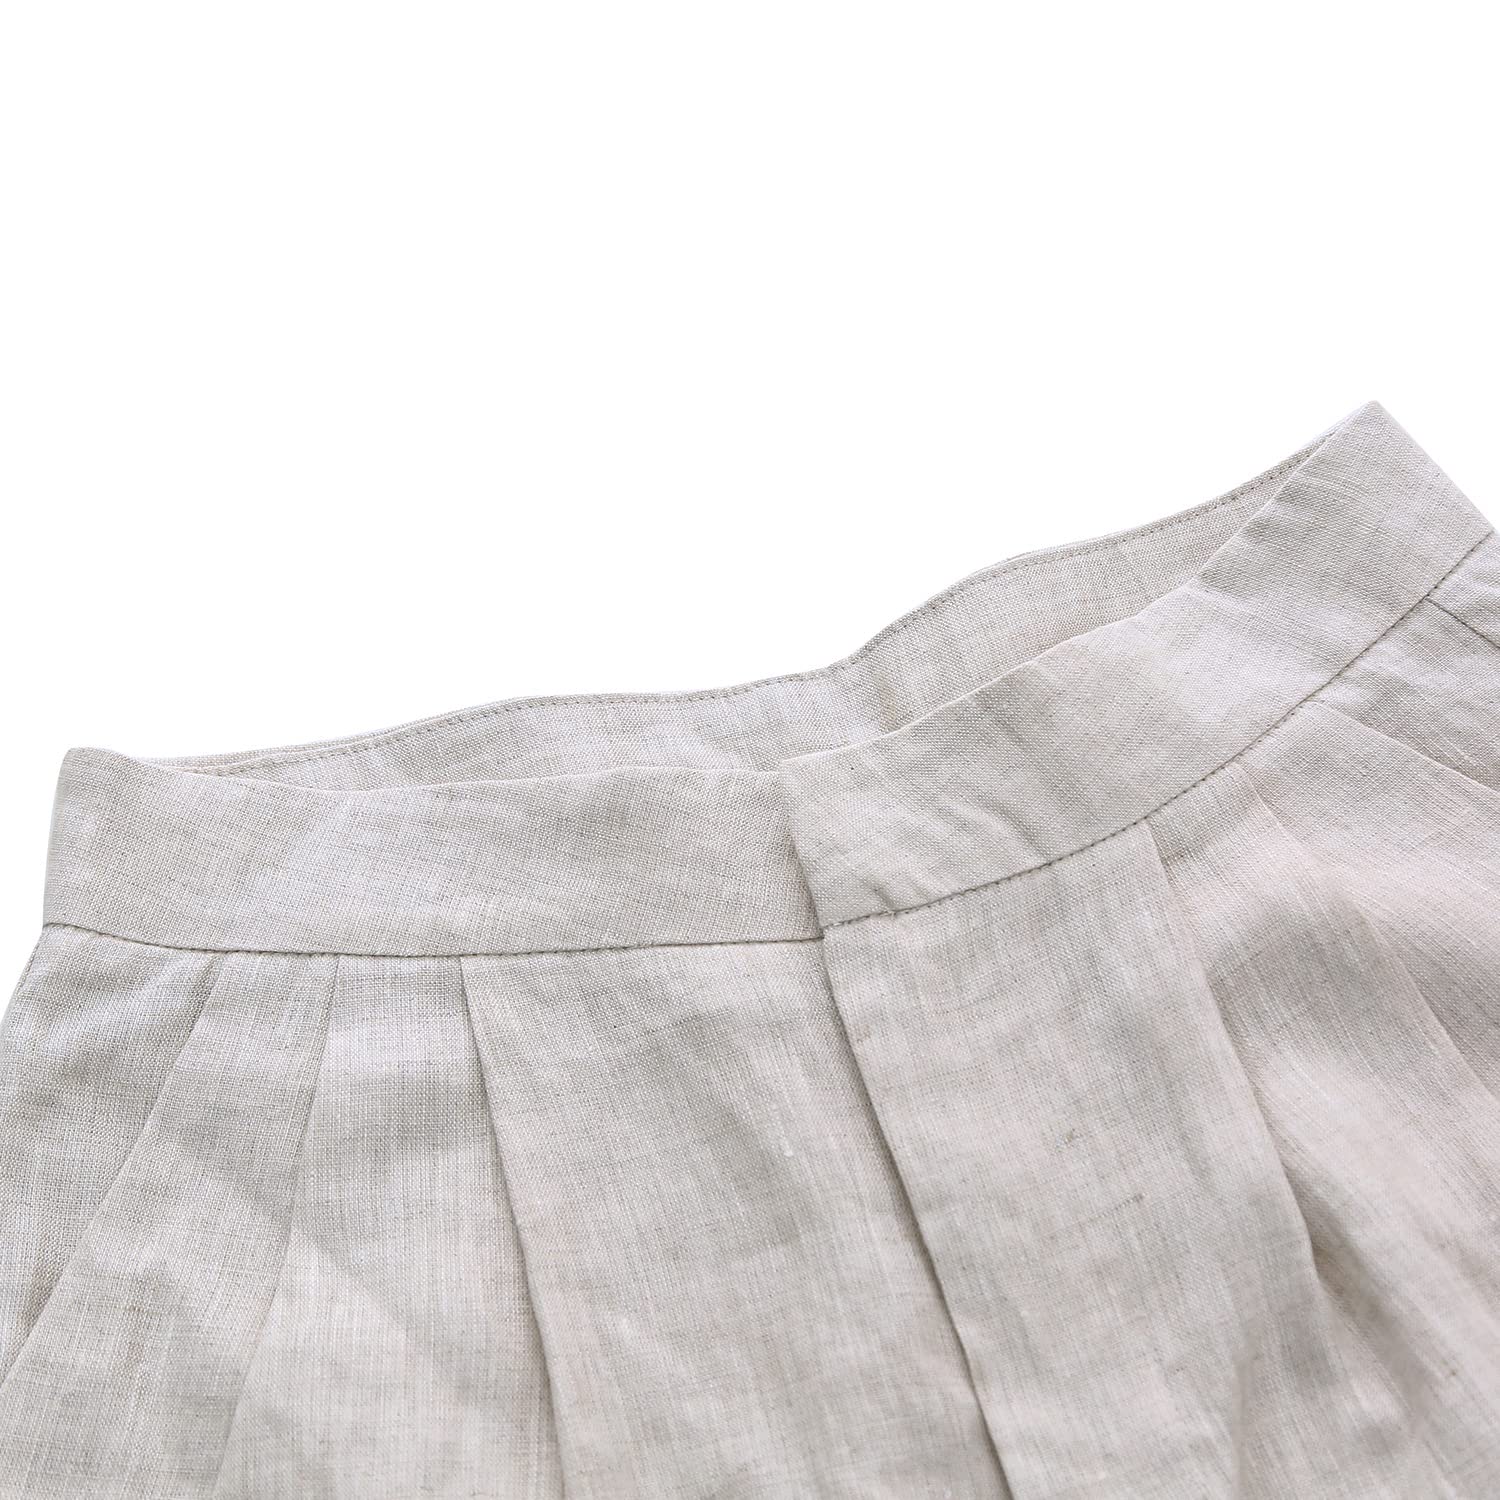 NTG Fad 100% Linen Women Linen High Waisted Trousers